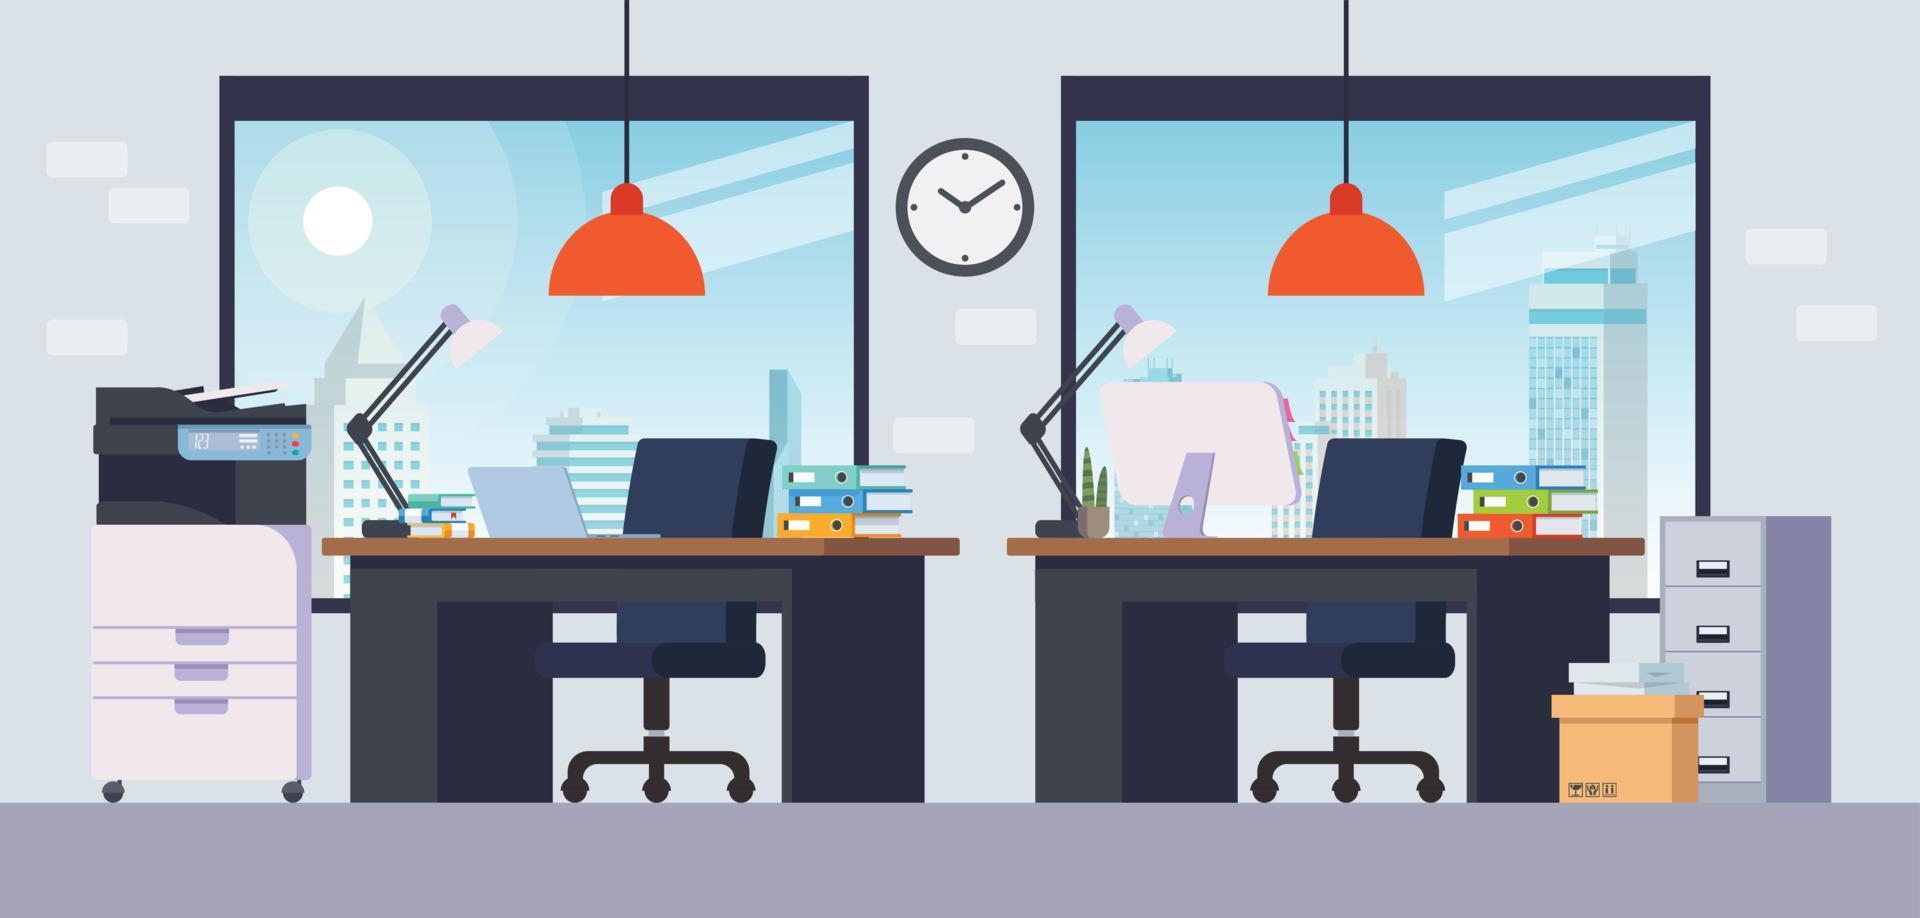 ilustração de uma sala de escritório com mesa, prateleira, impressora e computador. vetor